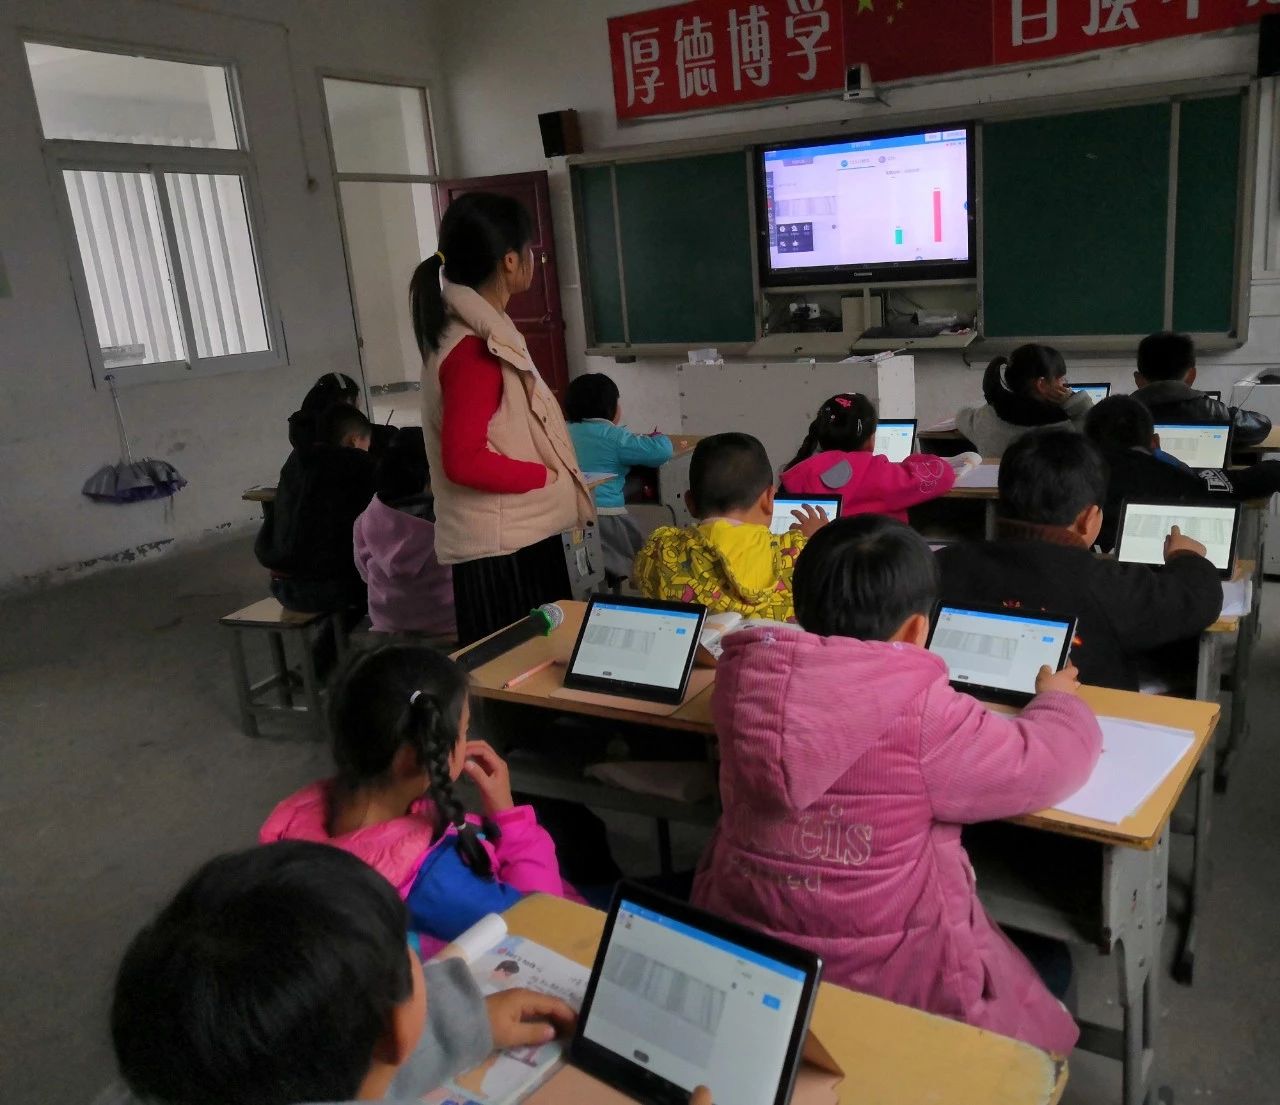 安徽：“在線(xiàn)课堂”拉近城乡距离 教育信息化促教育公平